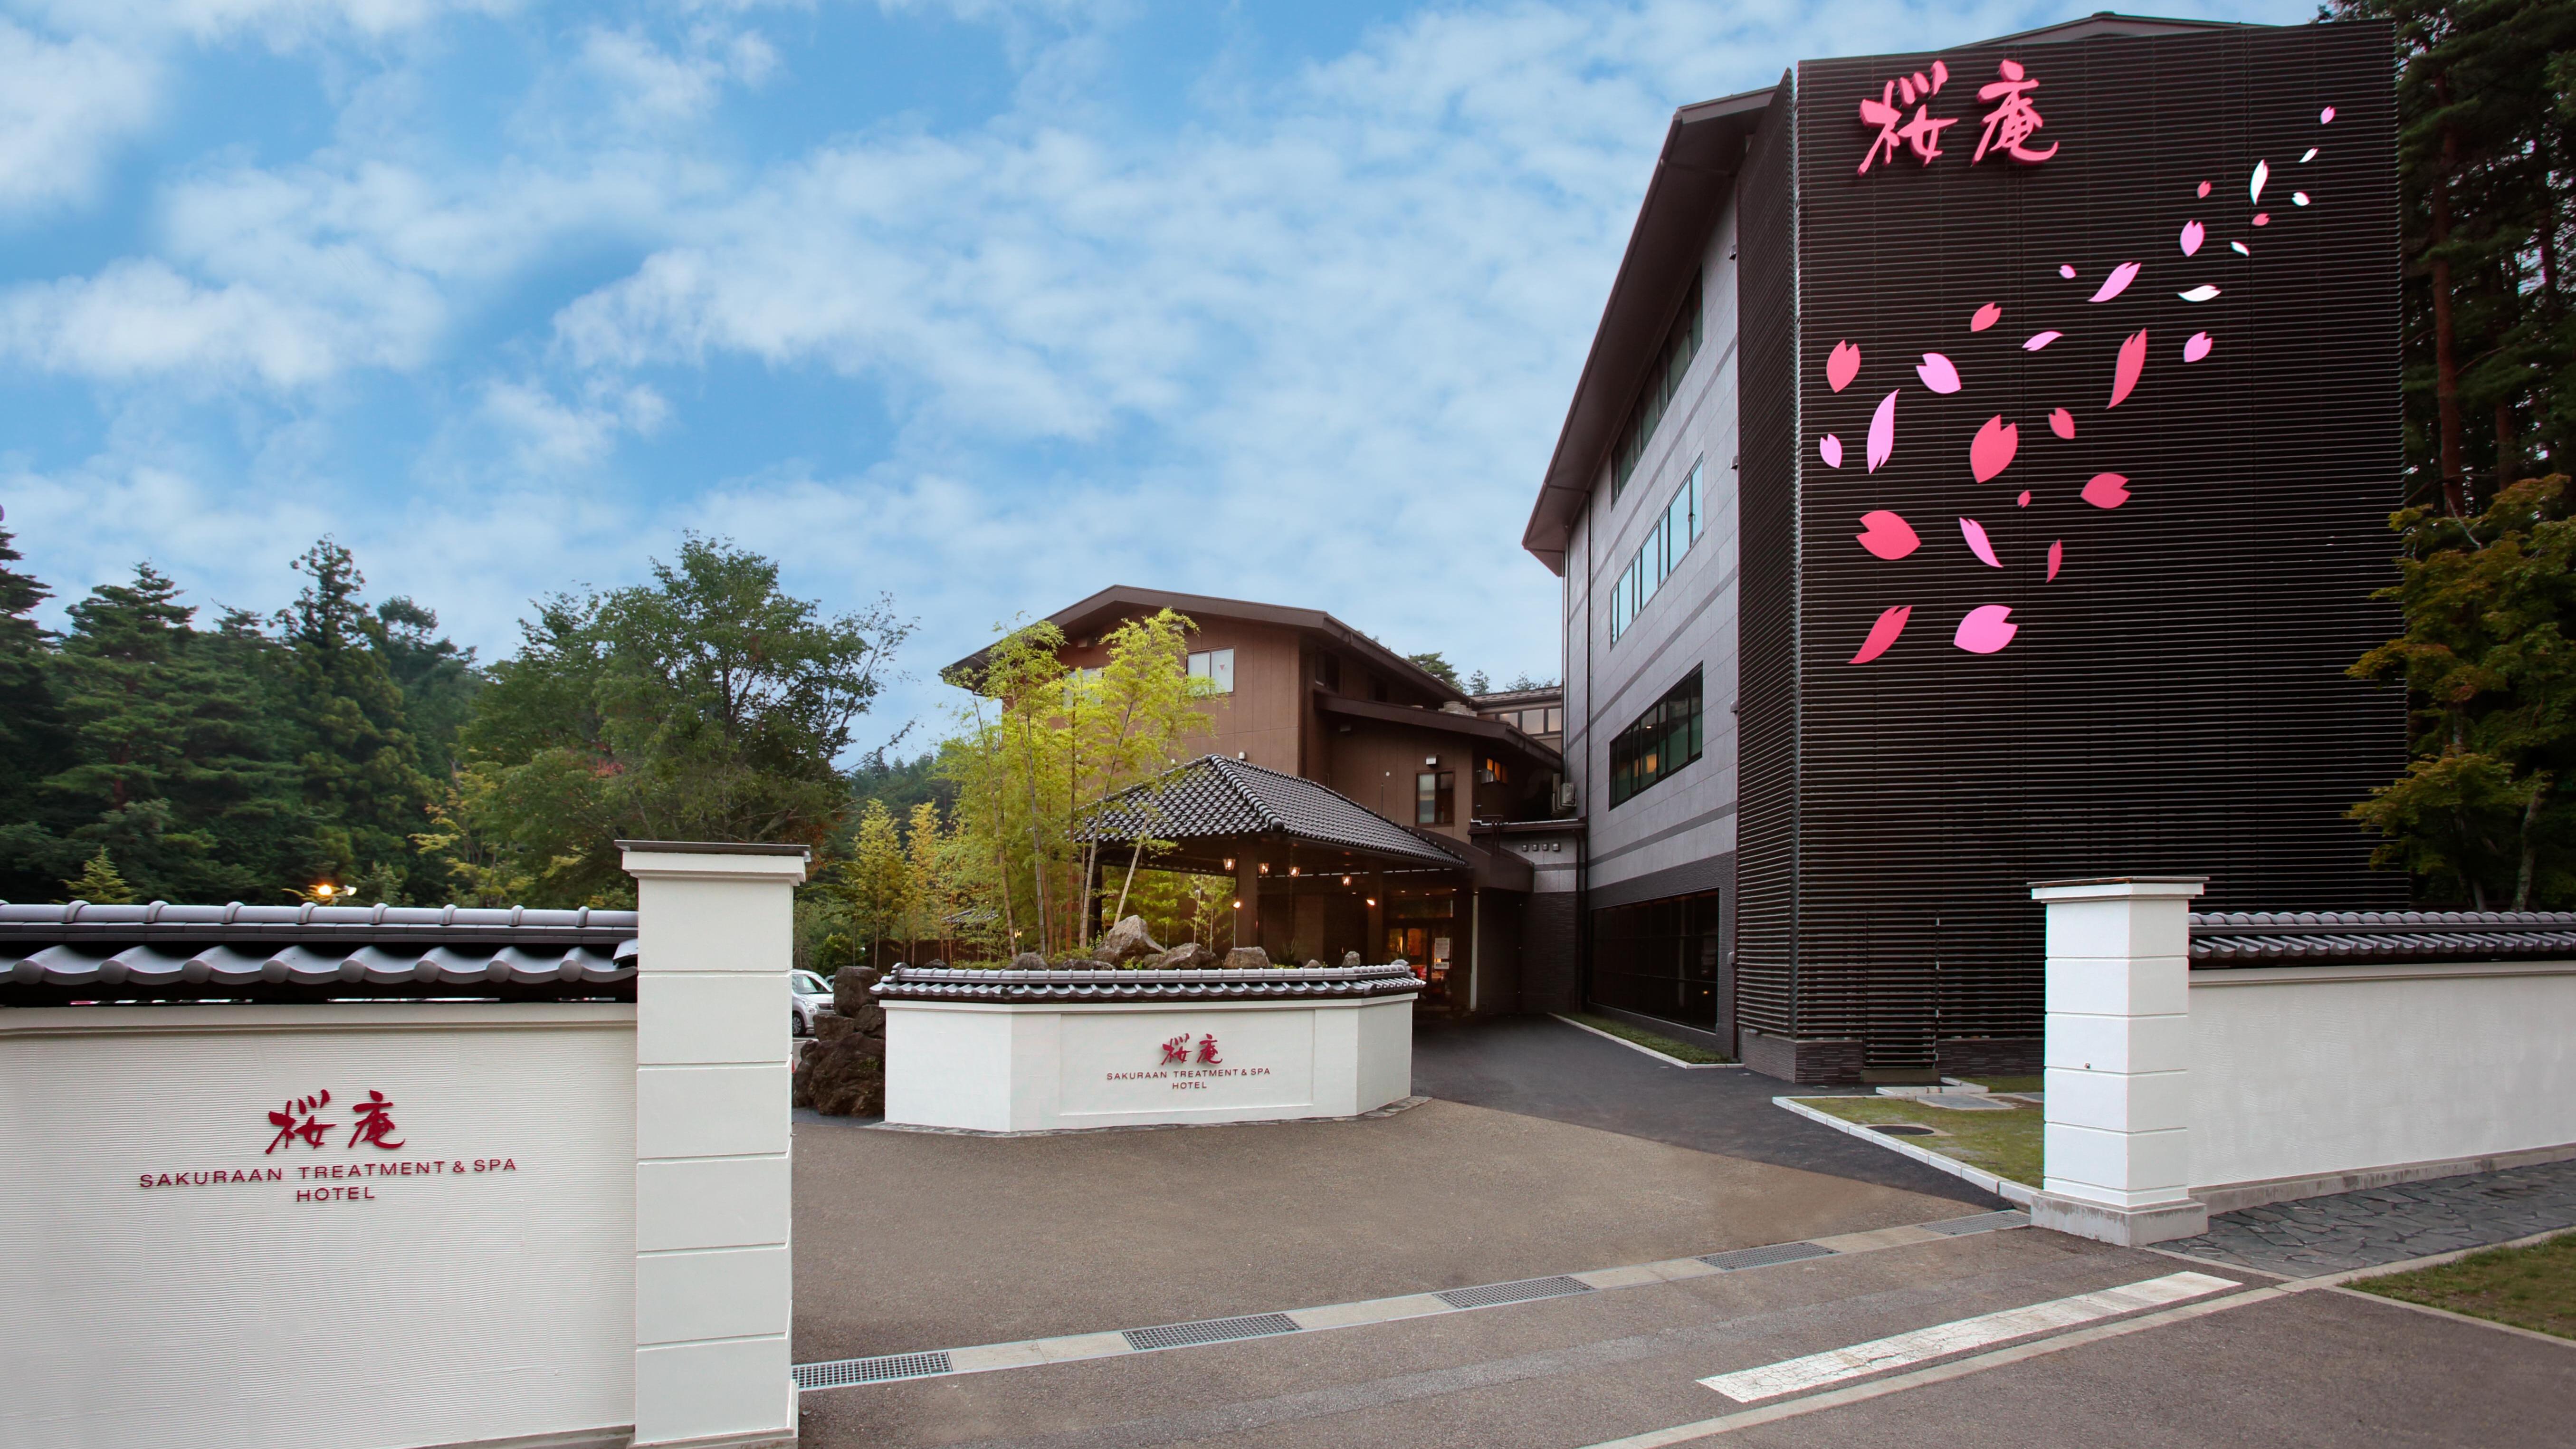 Sakura-an Kawaguchiko Hotel